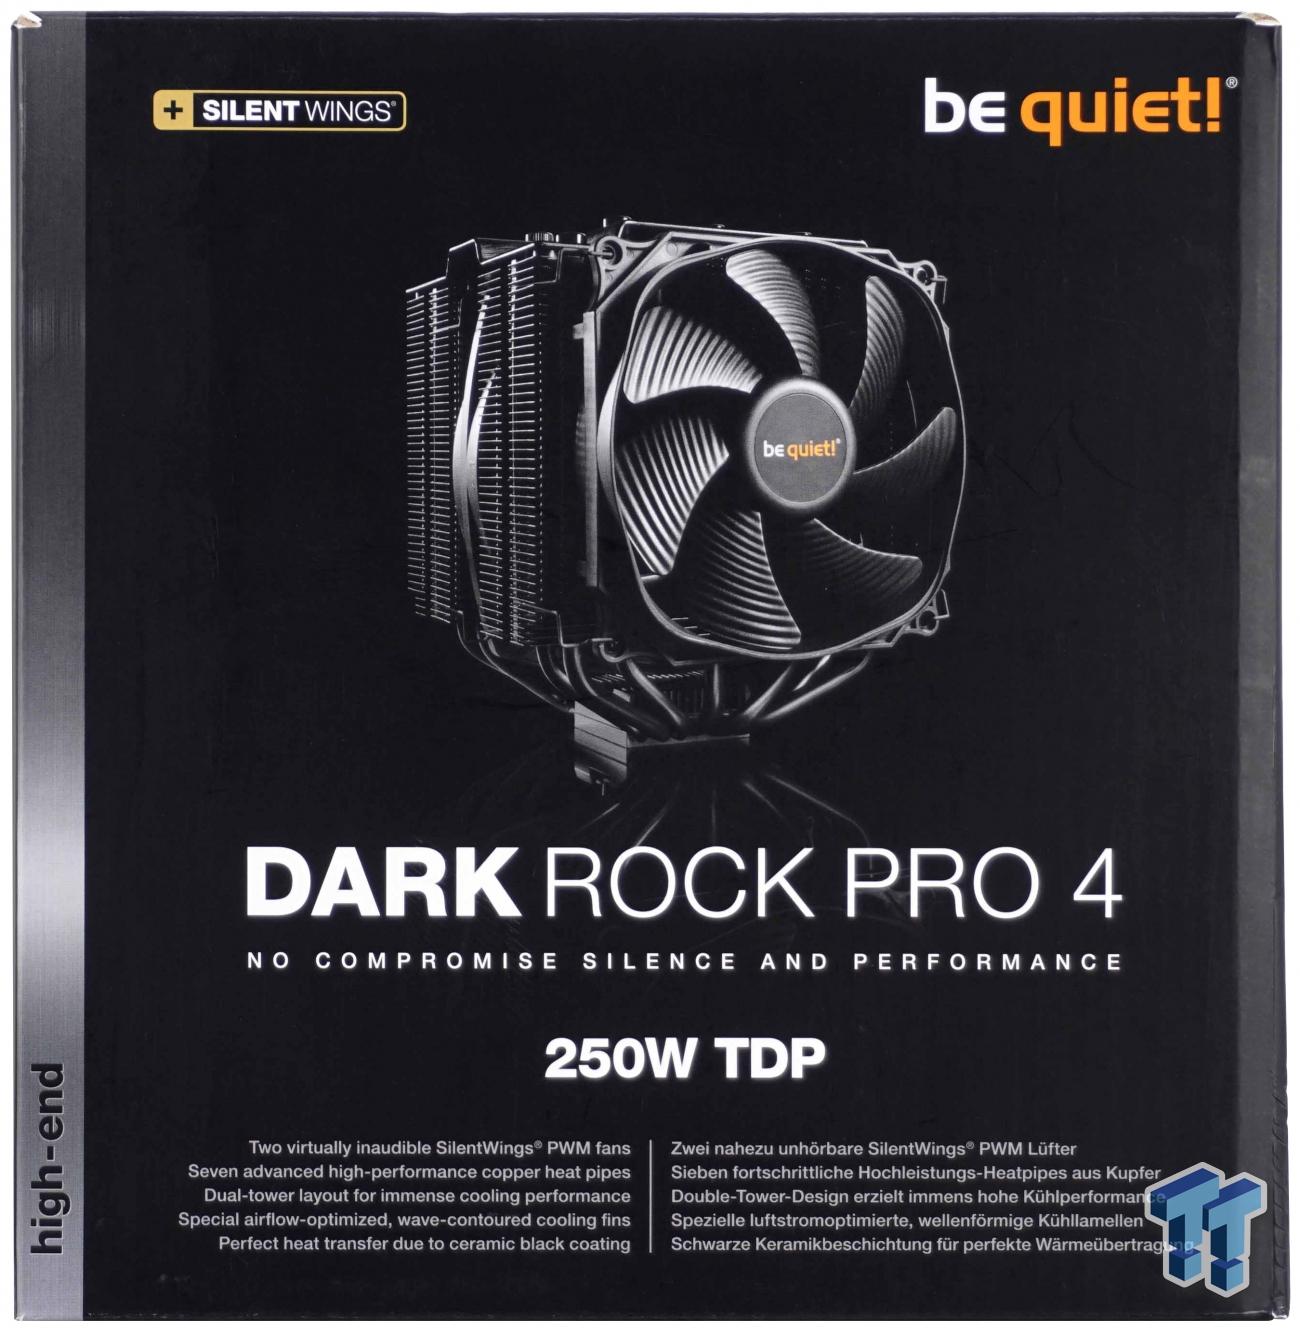 be quiet! - Dark Rock Pro 4 CPU Cooler Review